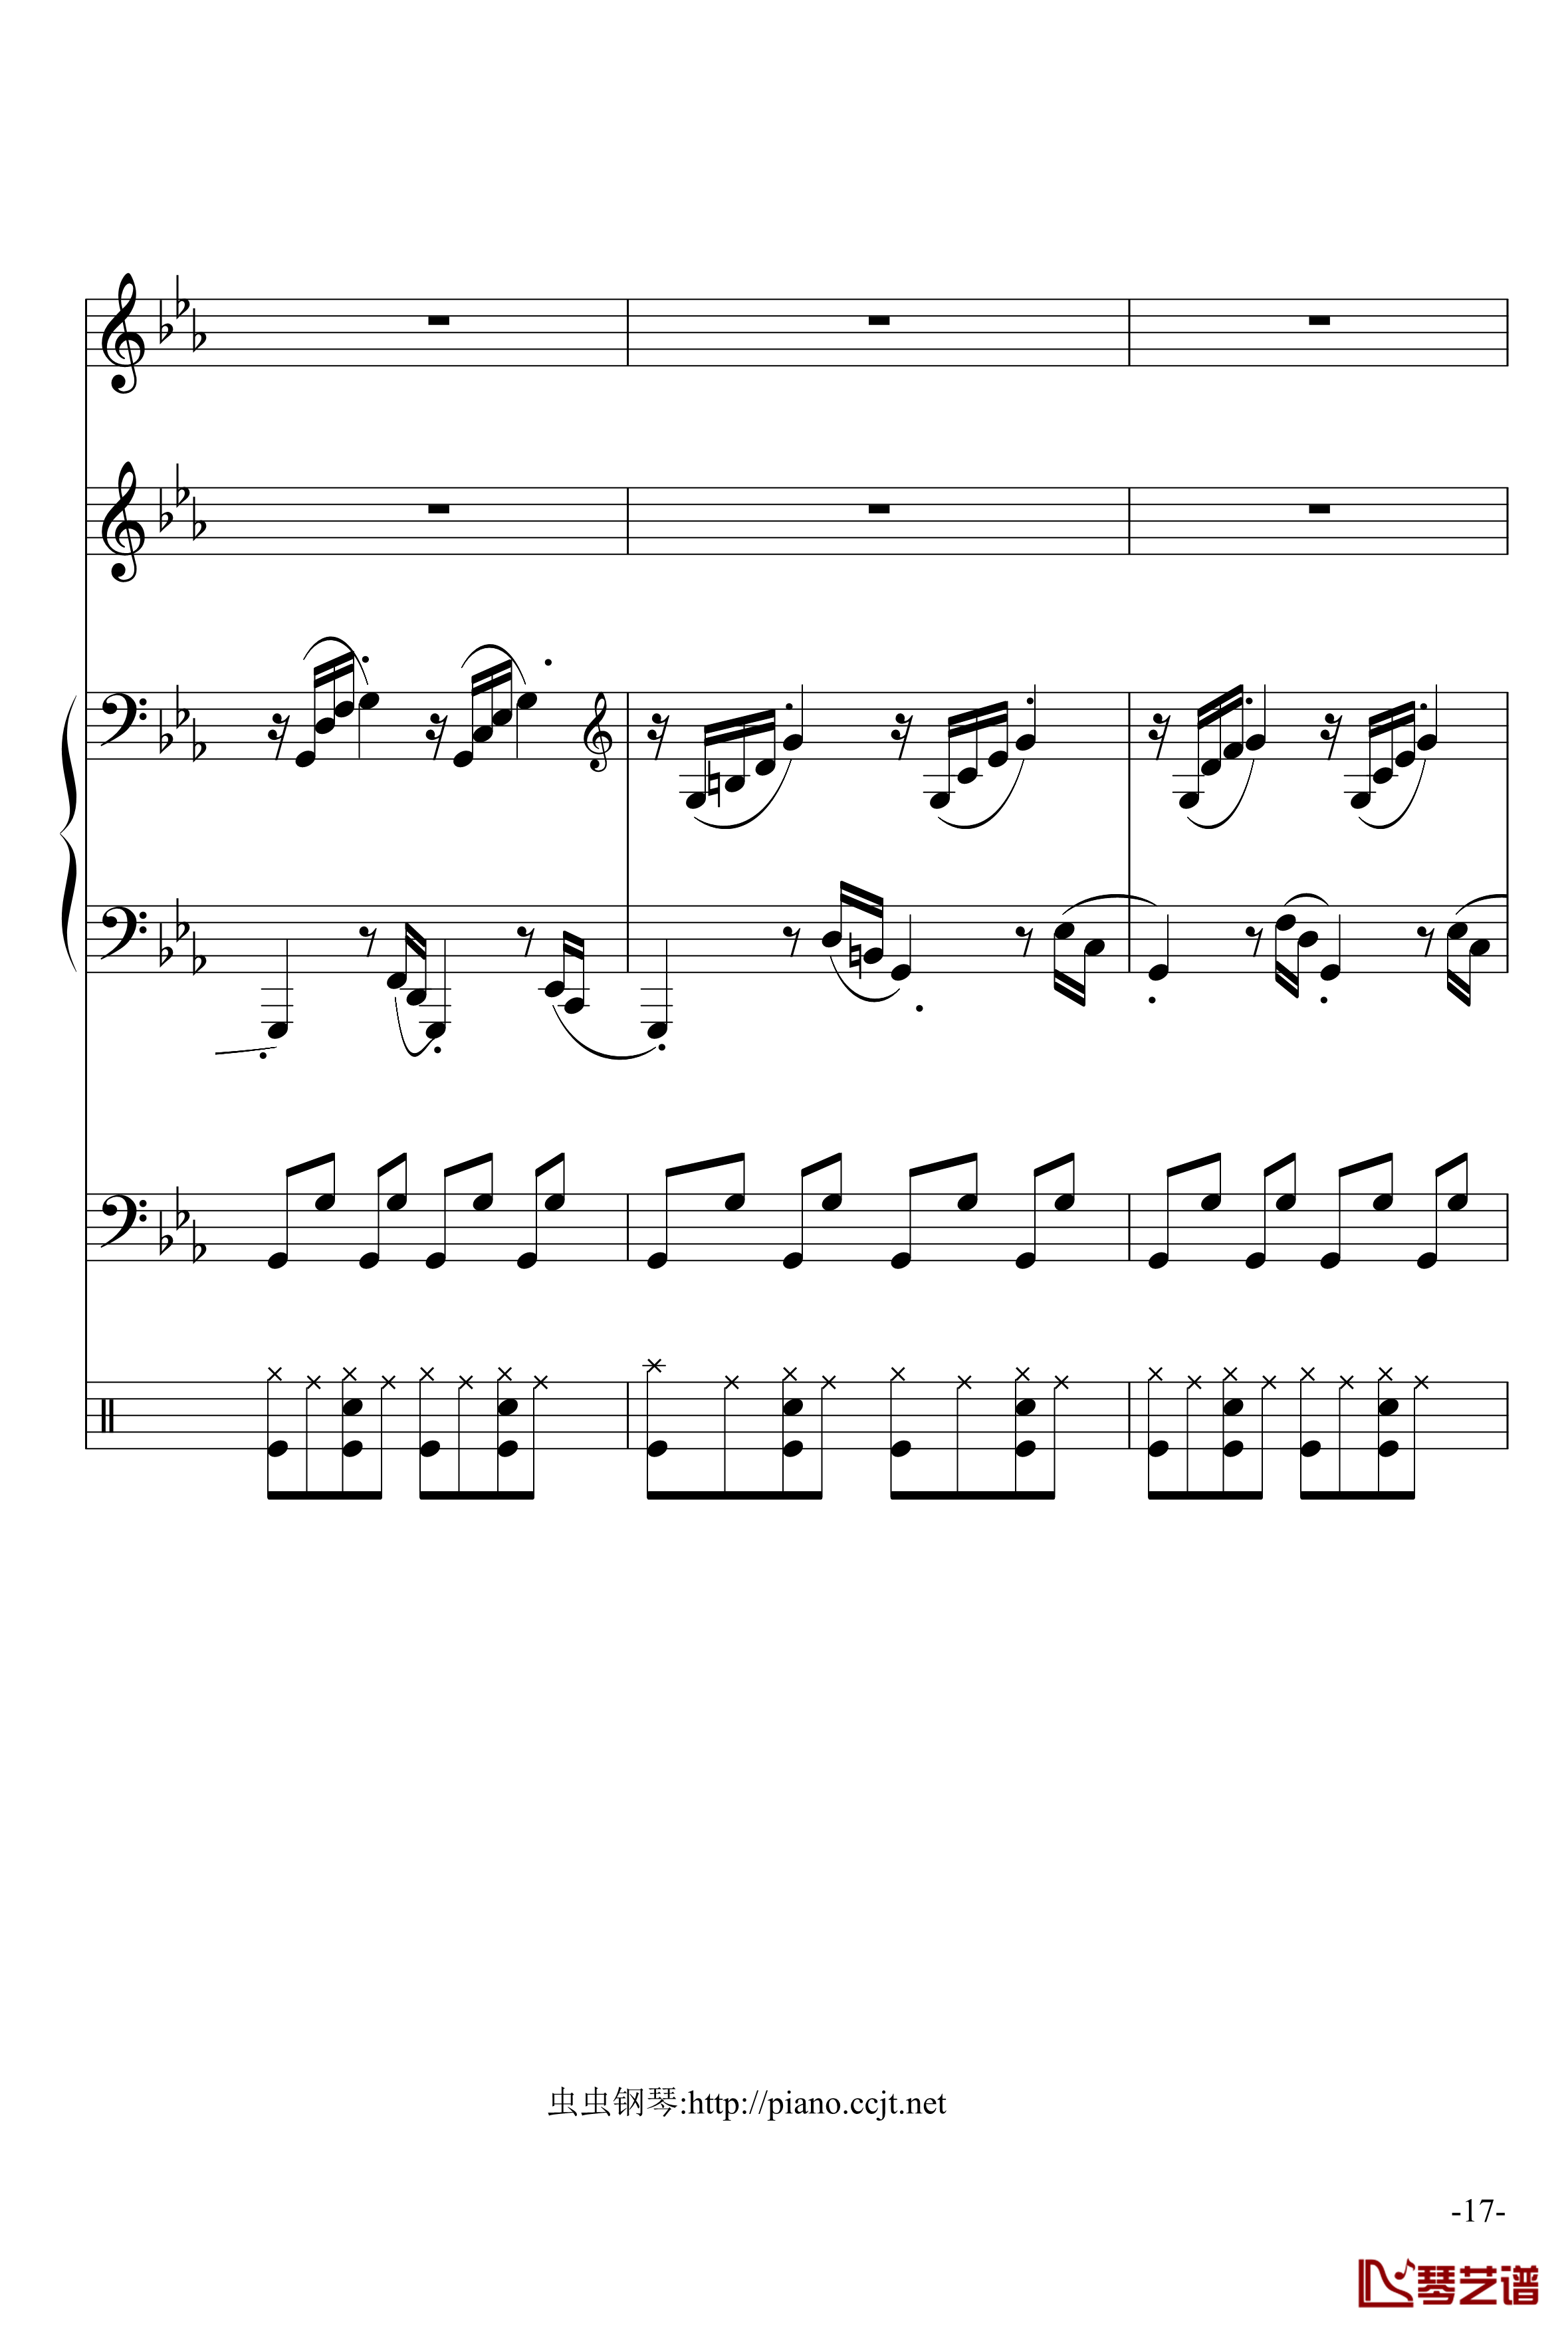 悲怆奏鸣曲钢琴谱-加小乐队-贝多芬-beethoven17